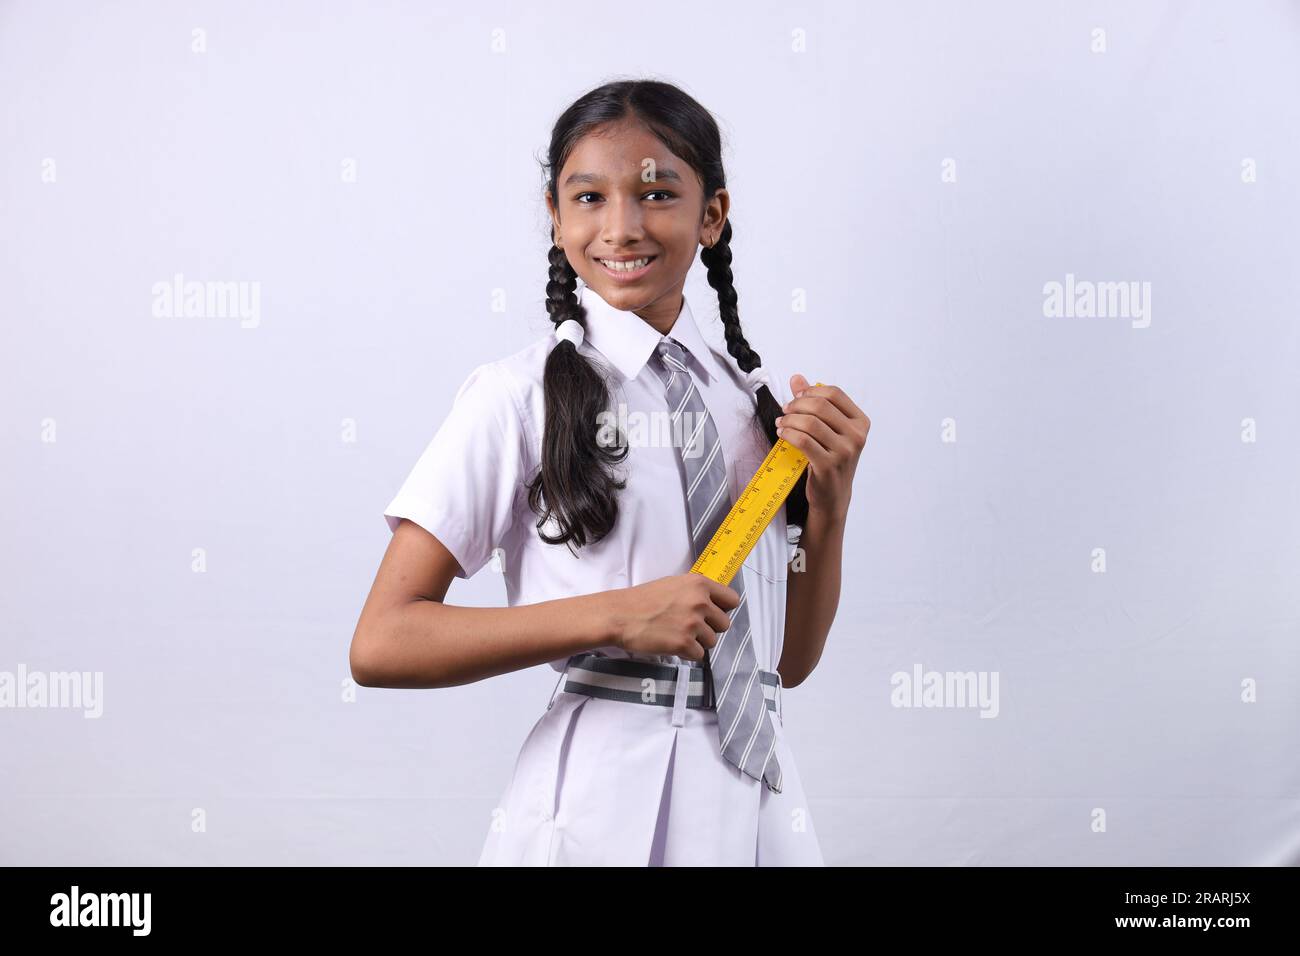 Ein indisches Landstadtmädchen, das ein Bildungskonzept macht und sich darauf vorbereitet, in Zukunft erfolgreich zu werden. Das Mädchen, das eine Waage als Klassenmonitor hält. Stockfoto